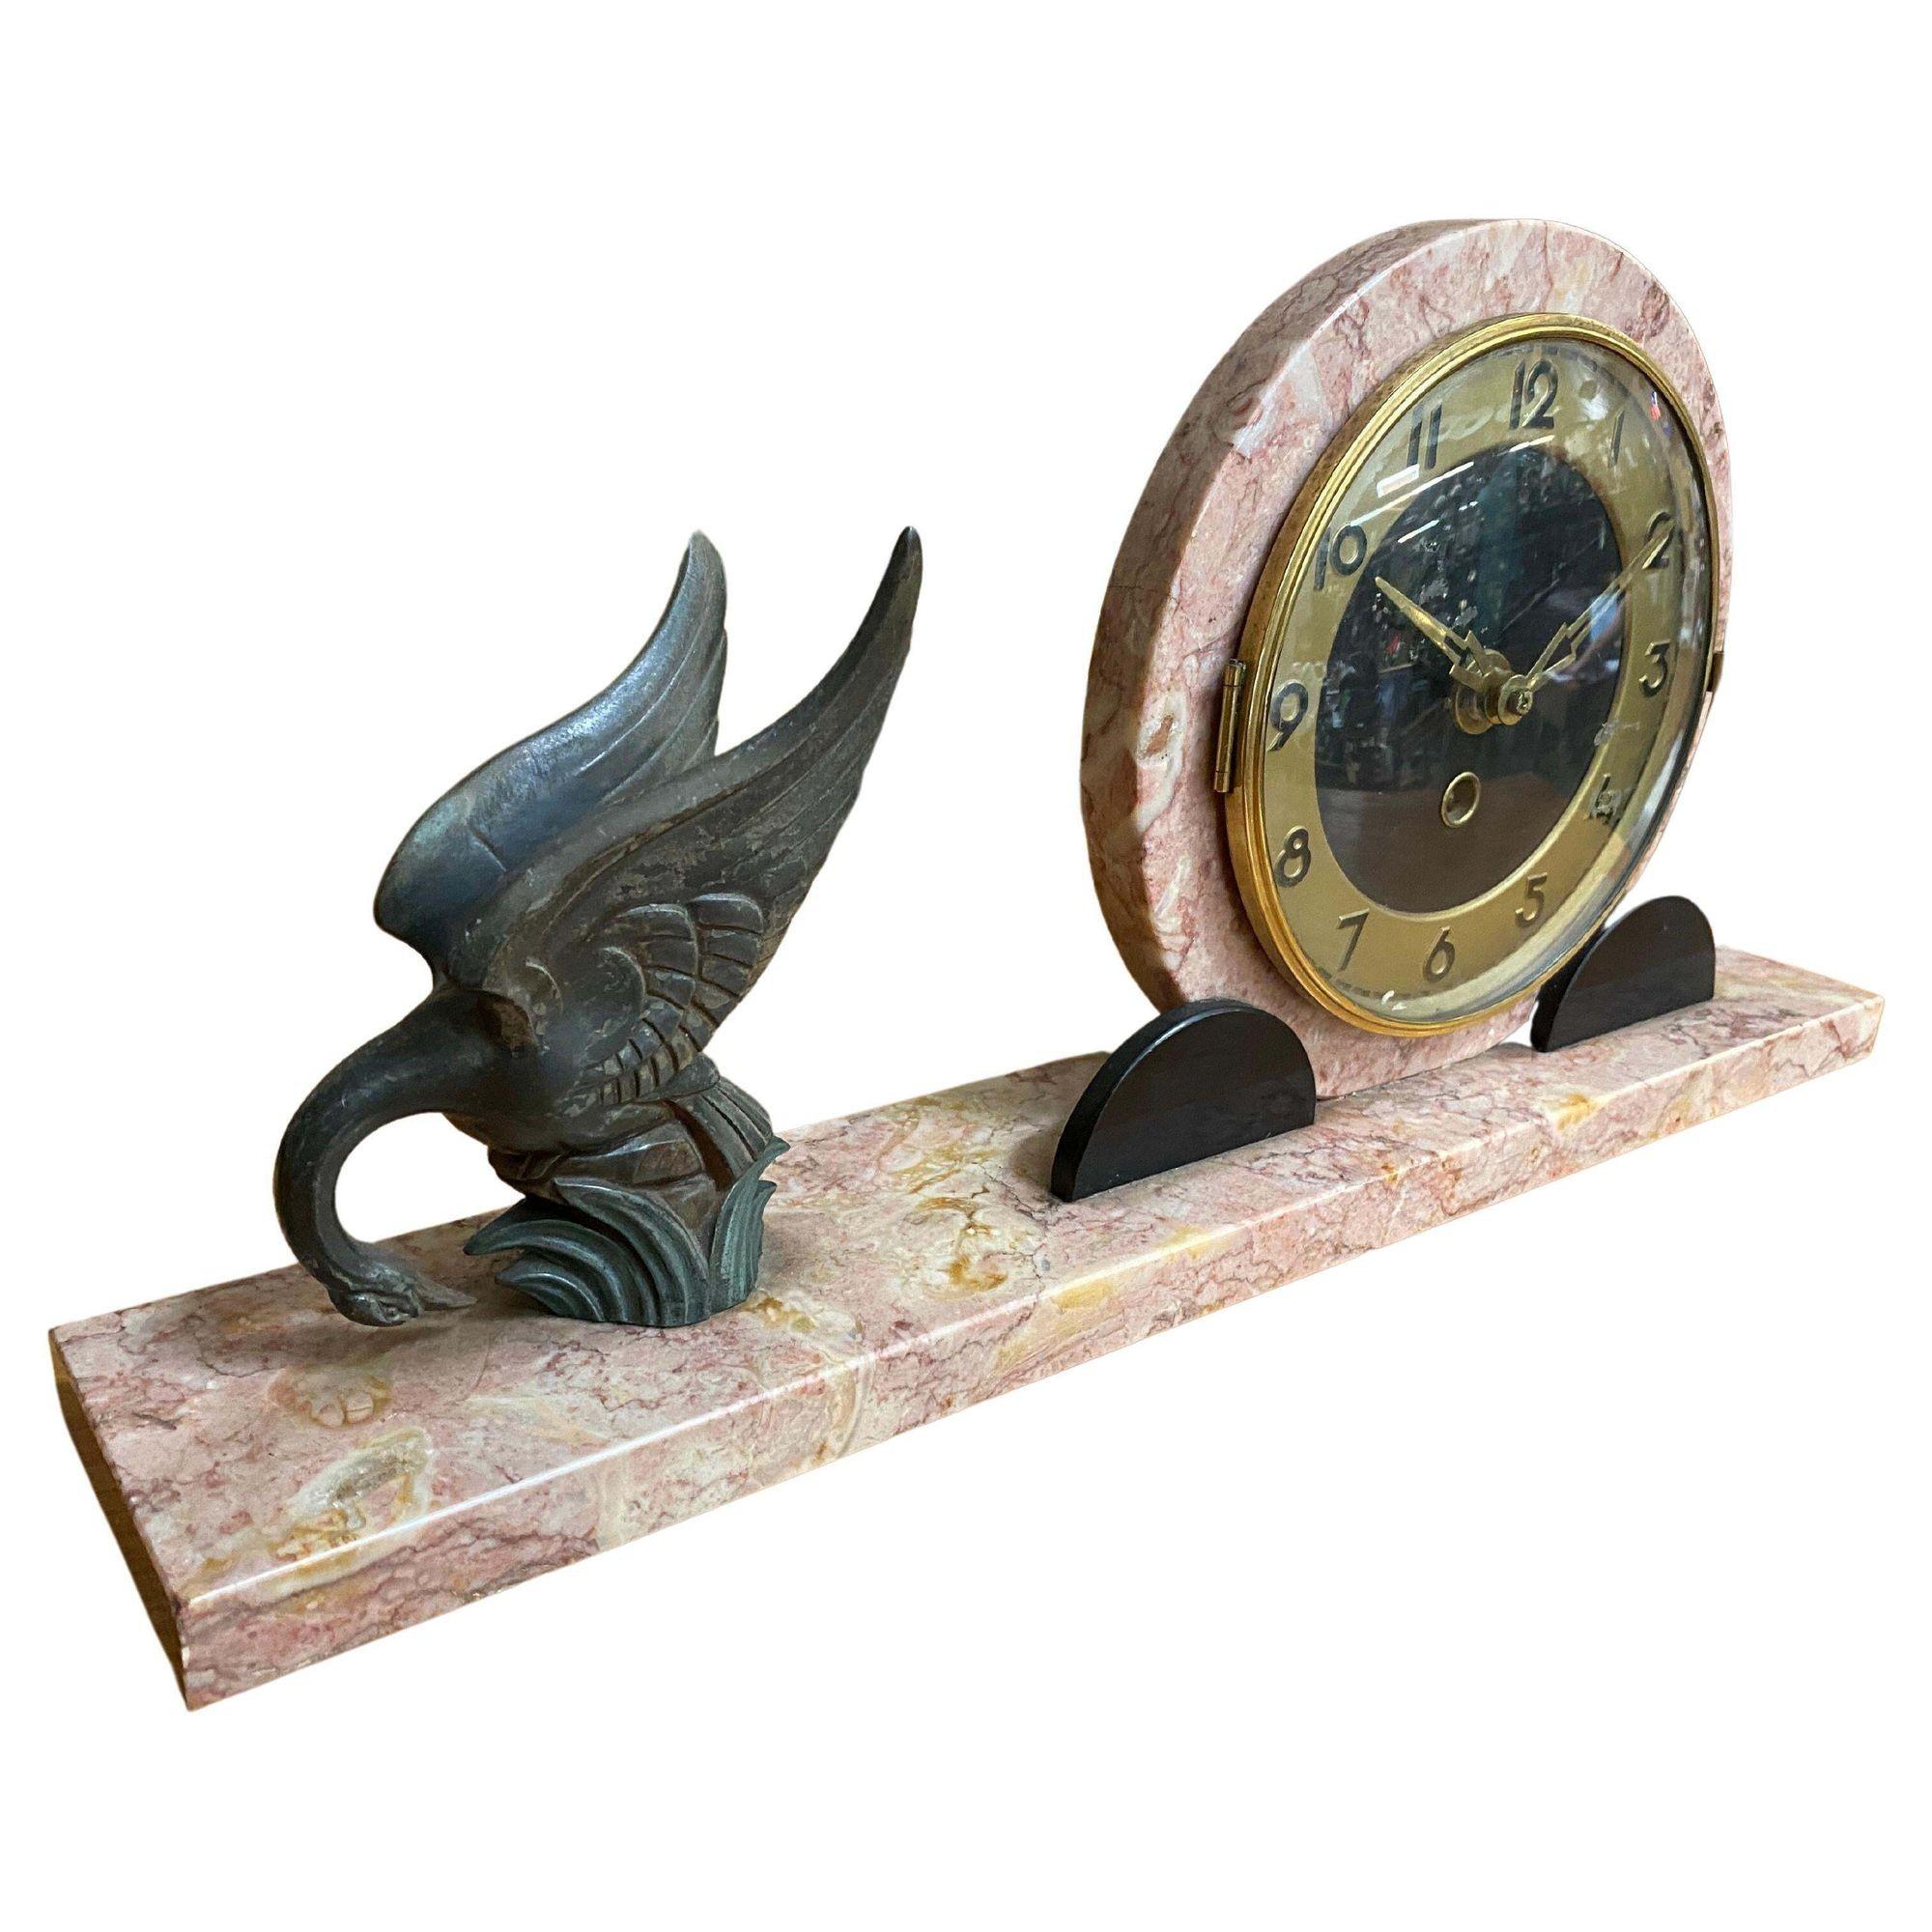 Dreiteilige Marefbay-Uhrengarnitur aus Marmor und Bronze im Art-Déco-Stil, um 1930
Markierungen: MAREFBAY
9 x 13-1/4 x 3 Zoll (22,9 x 33,7 x 7,6 cm) (Uhr)

Die runde Uhr mit arabischen Ziffern steht auf einem rechteckigen Marmorsockel mit